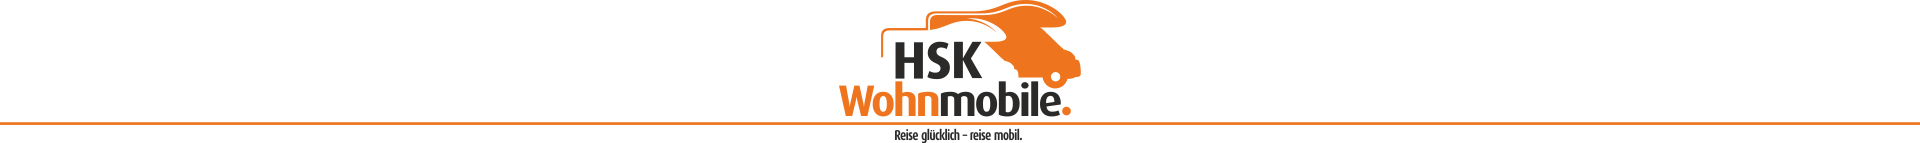 HSK Wohnmobile – Startseite